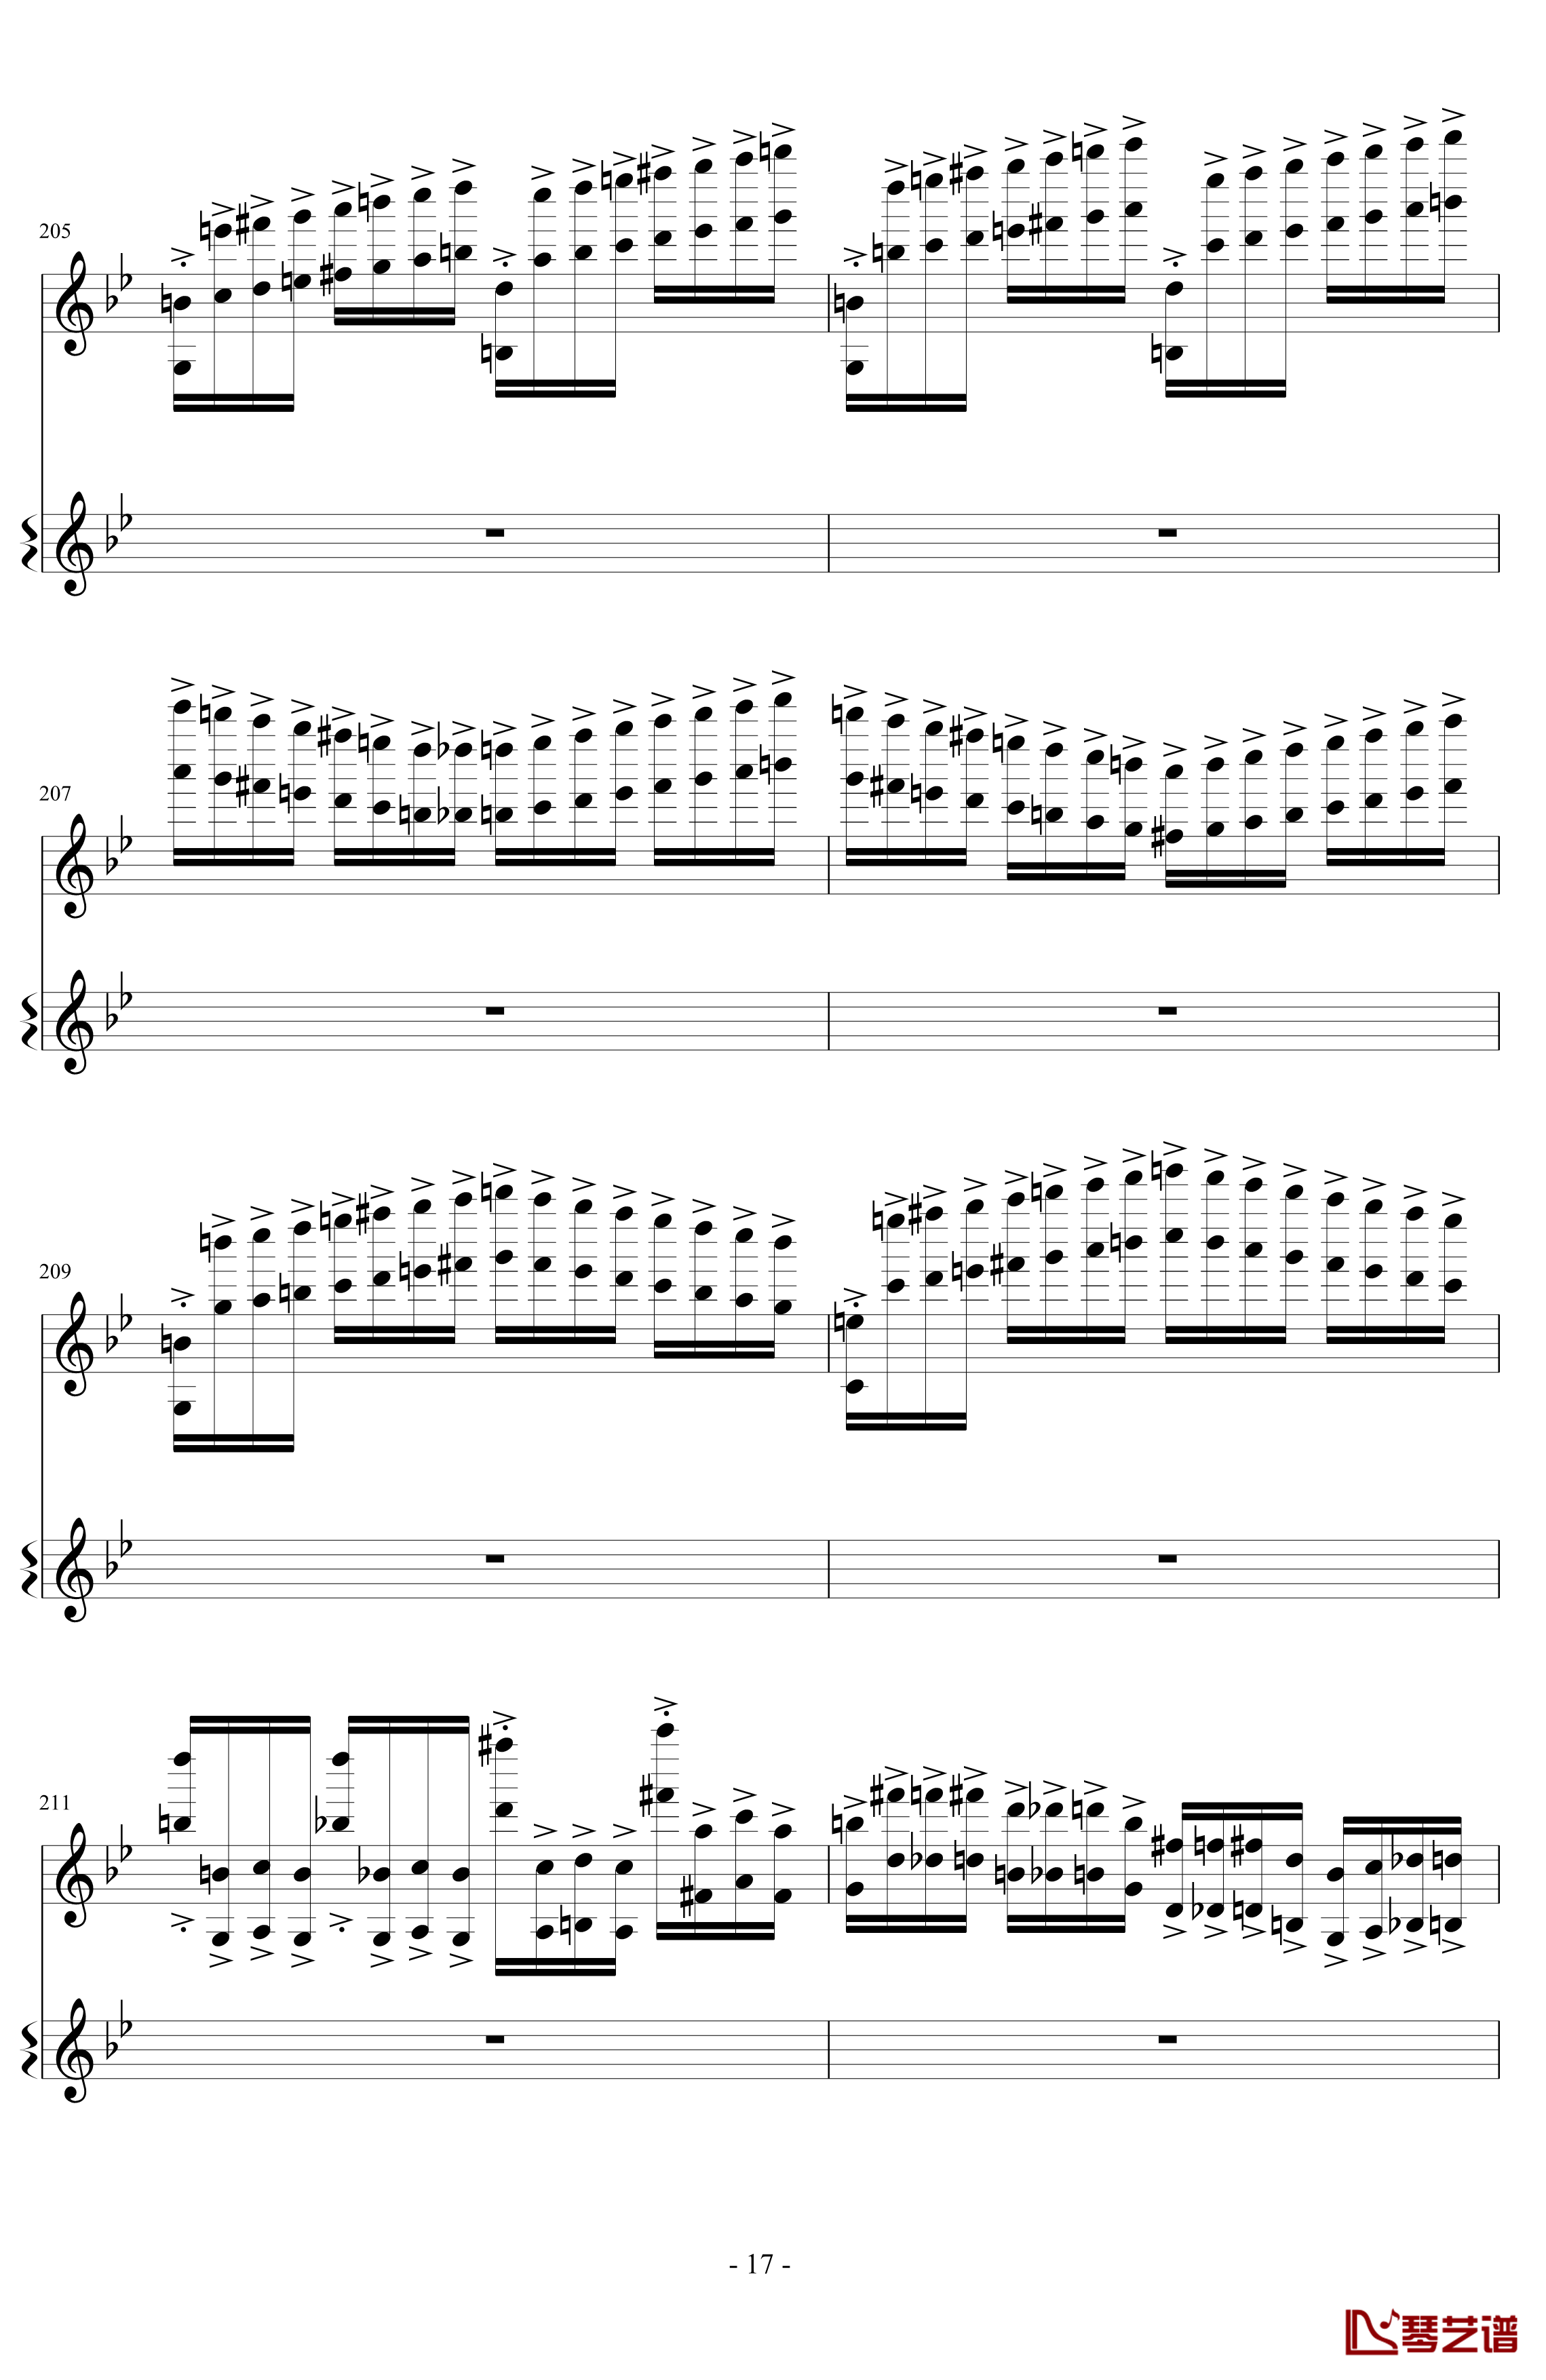 意大利国歌变奏曲钢琴谱-DXF17